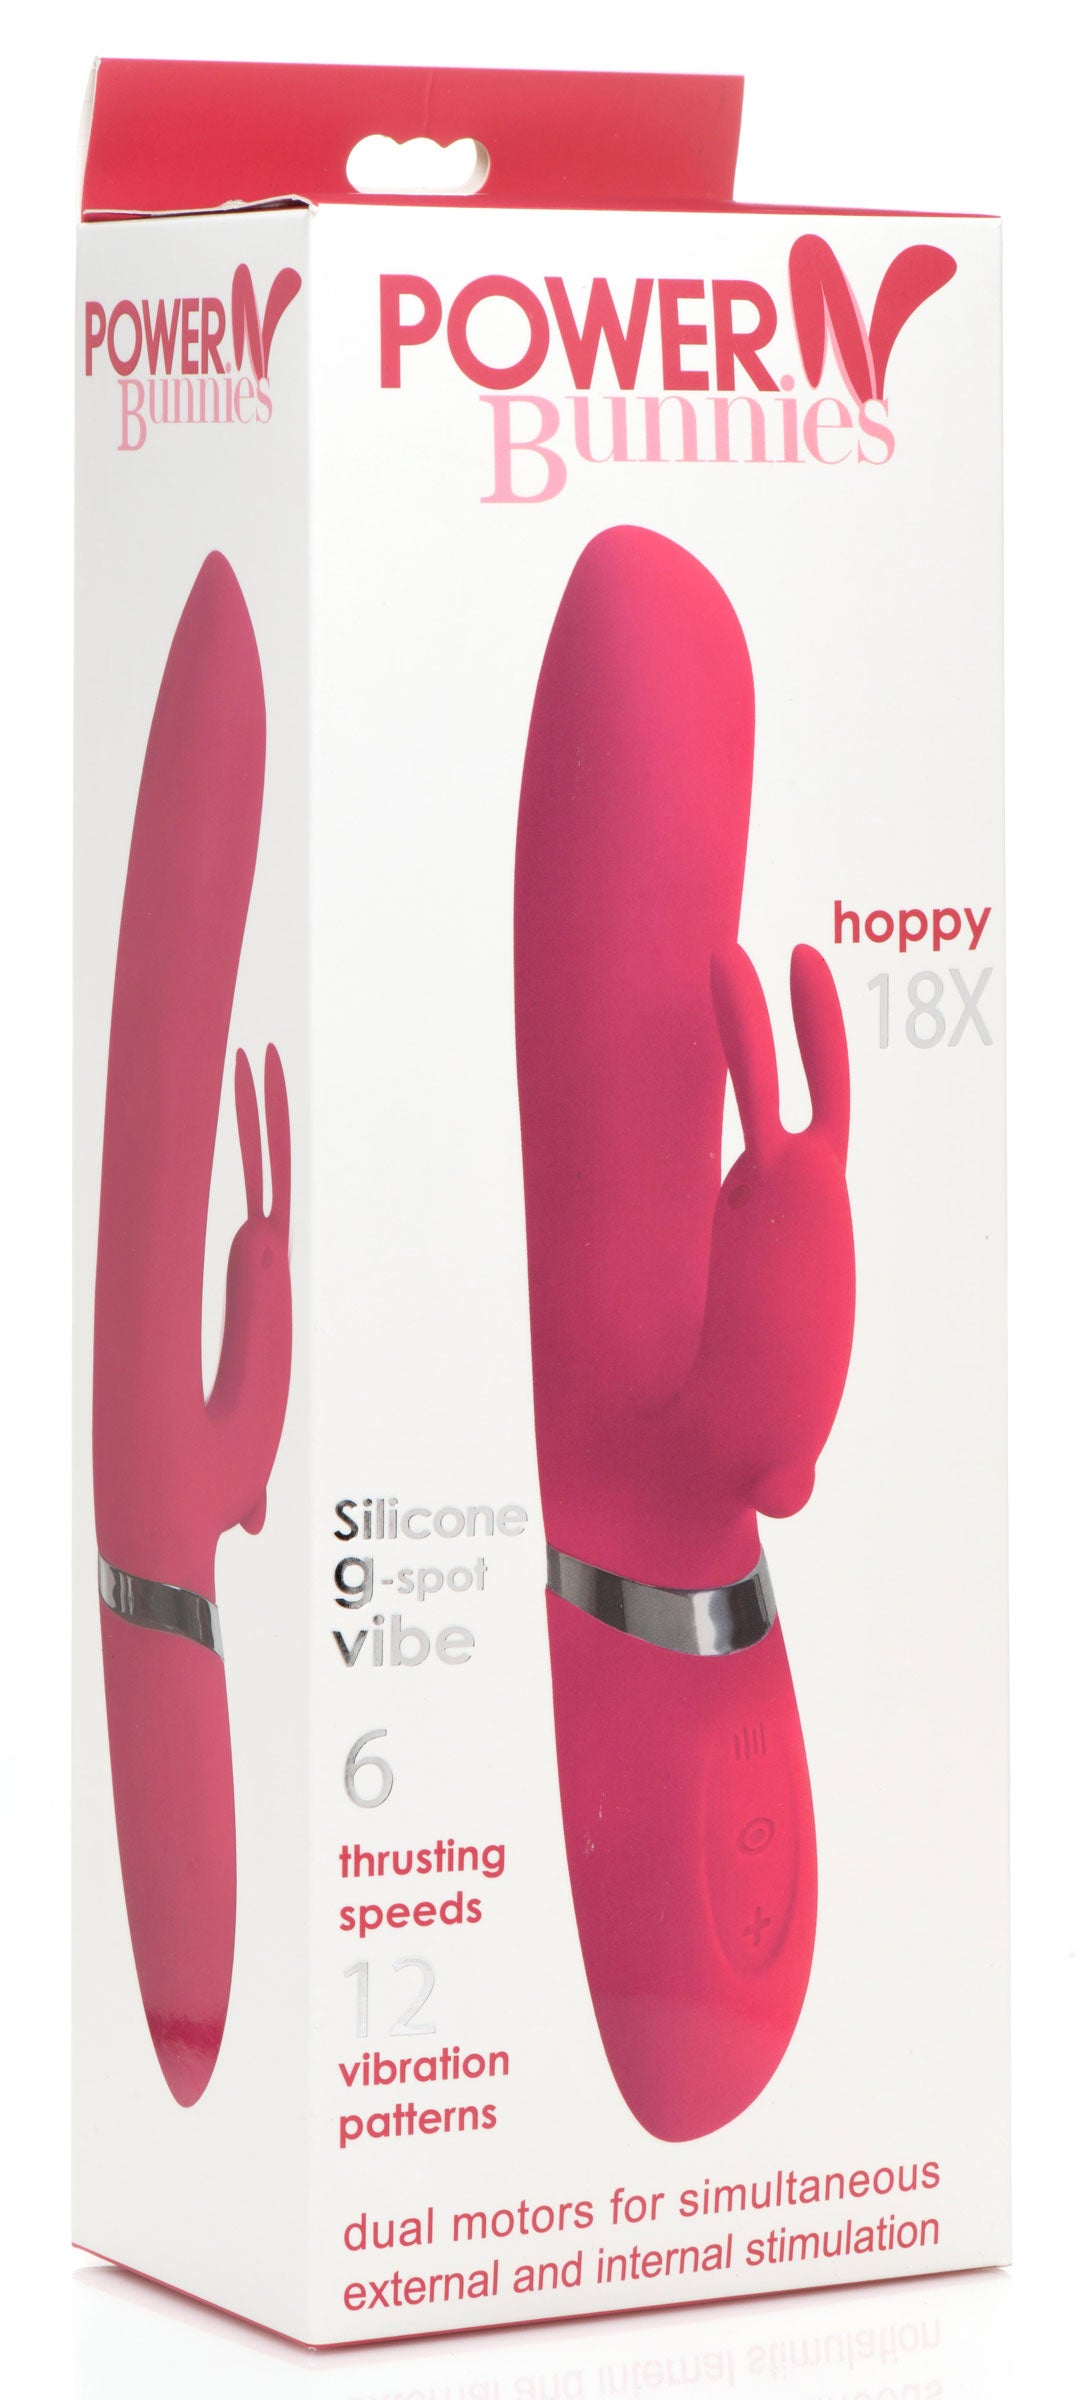 Hoppy 18x G-spot Rabbit Vibrator